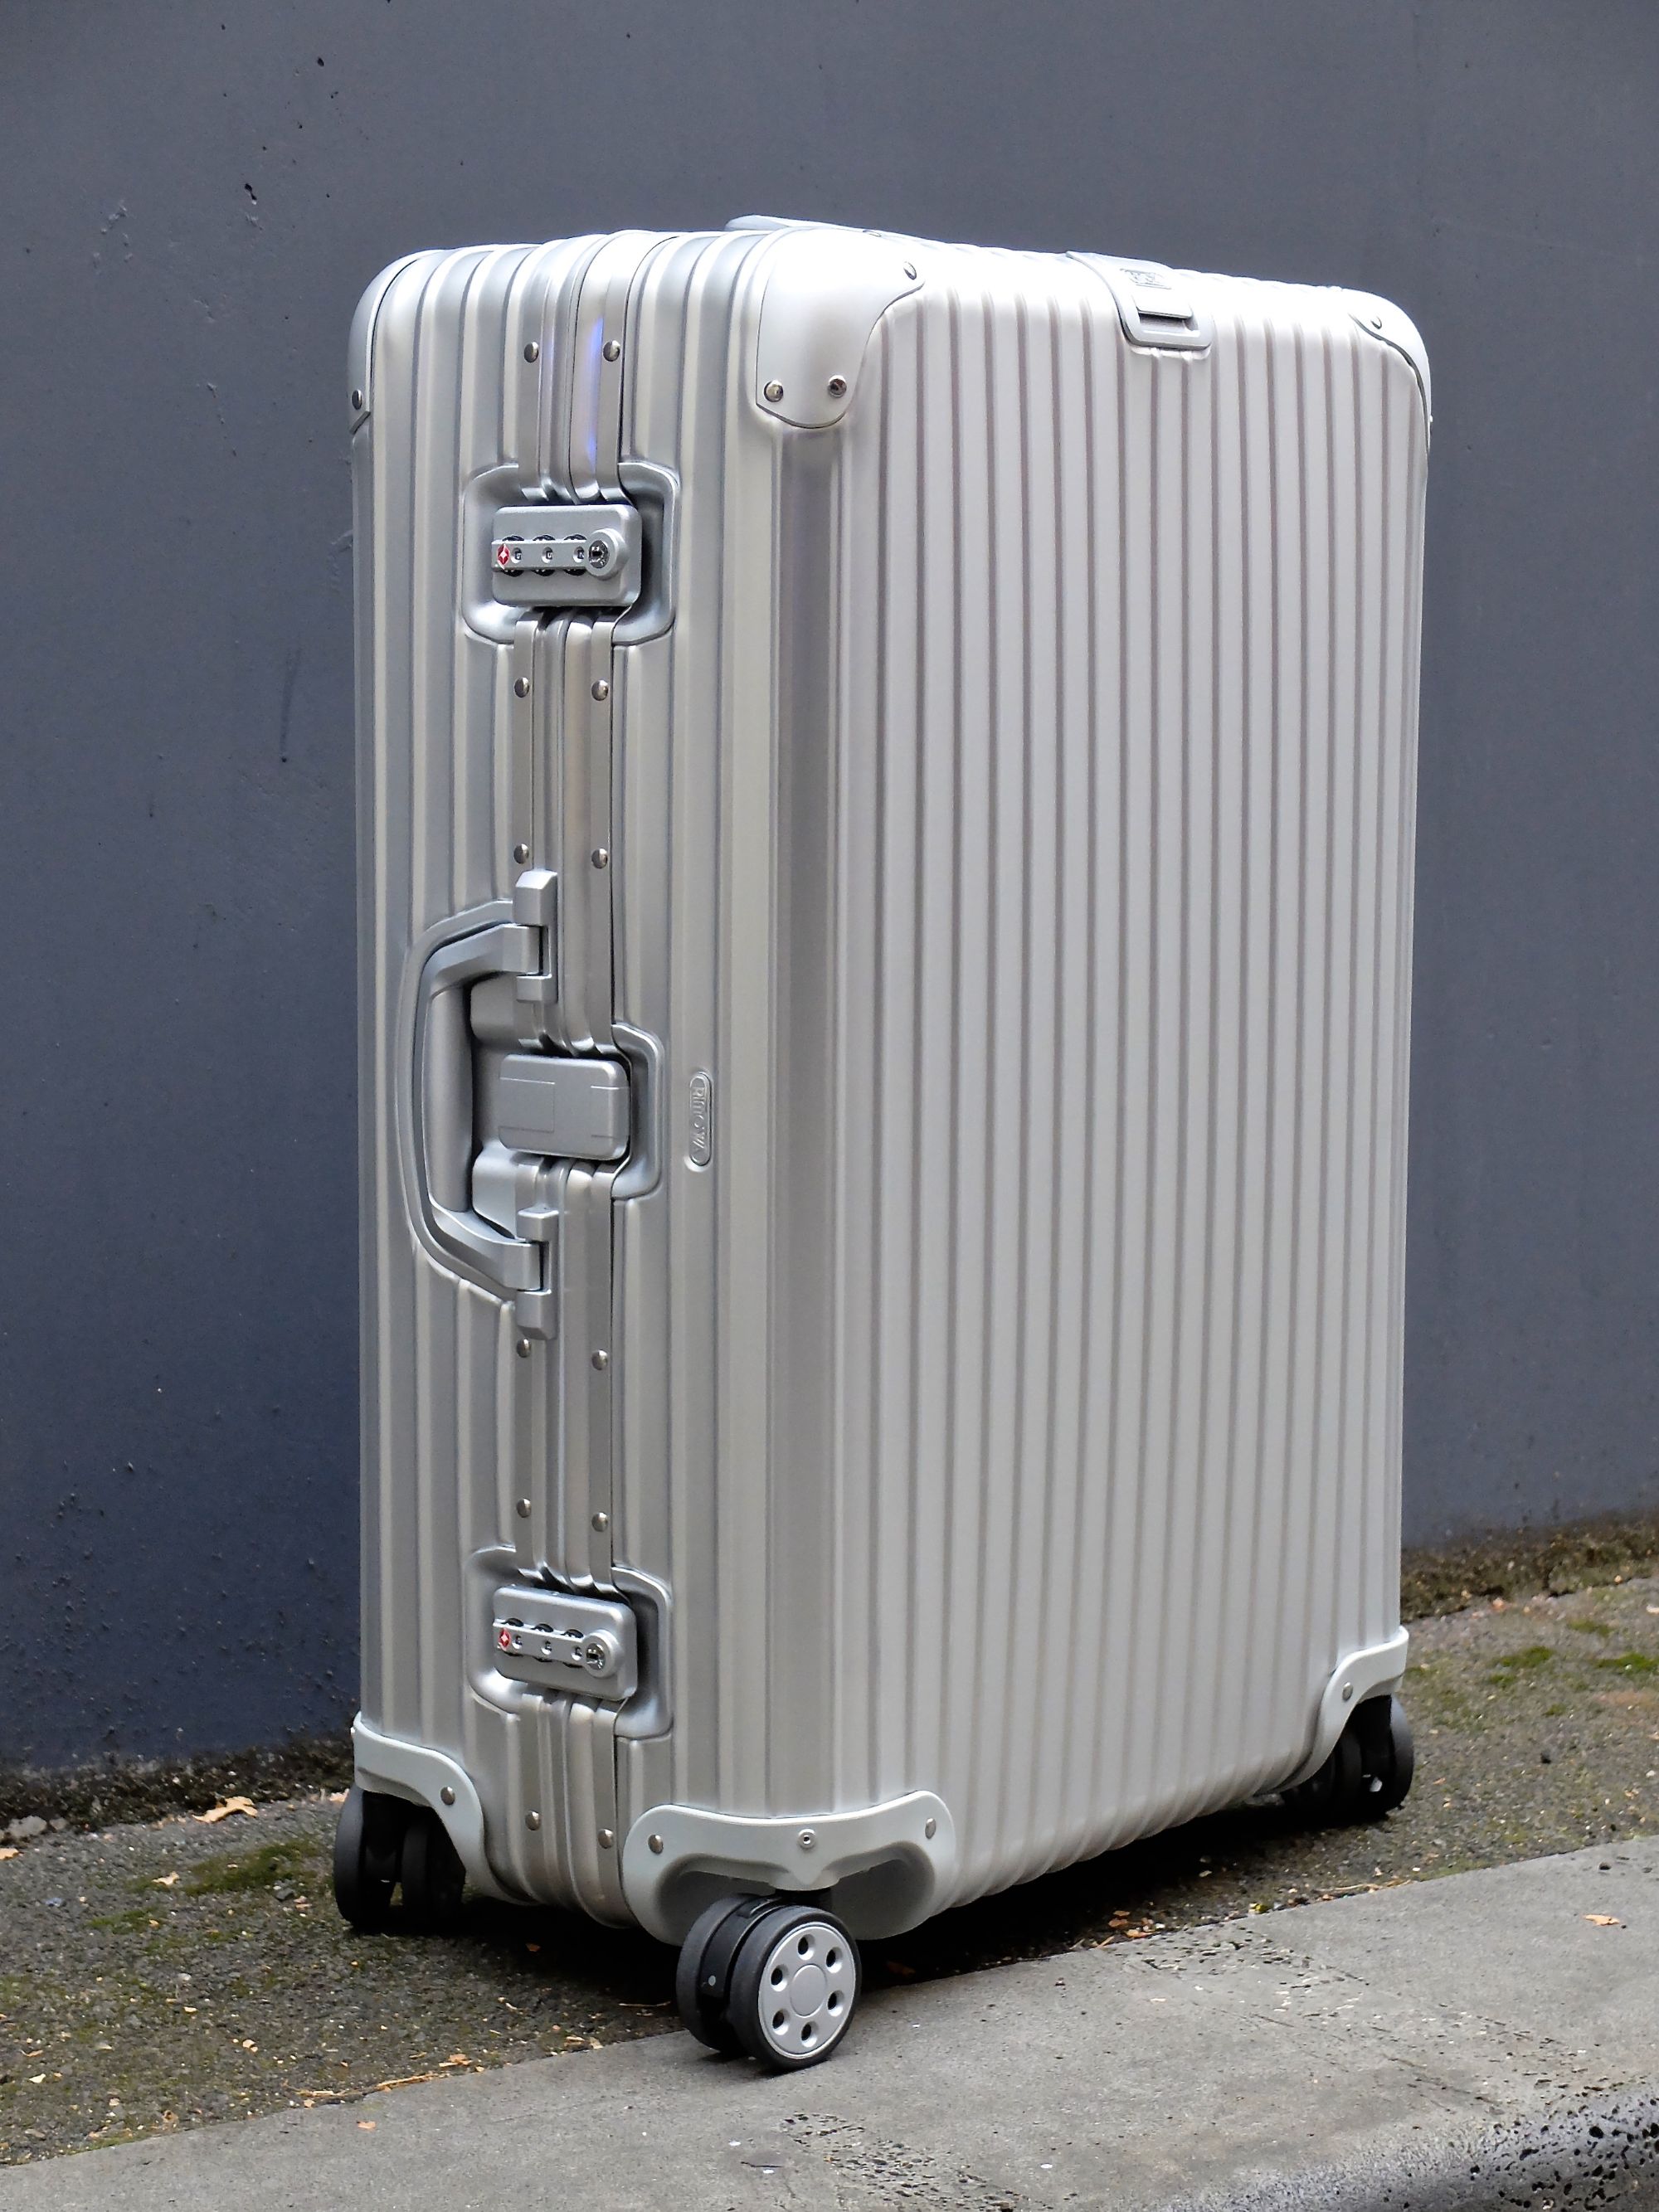 rimowa look alike luggage